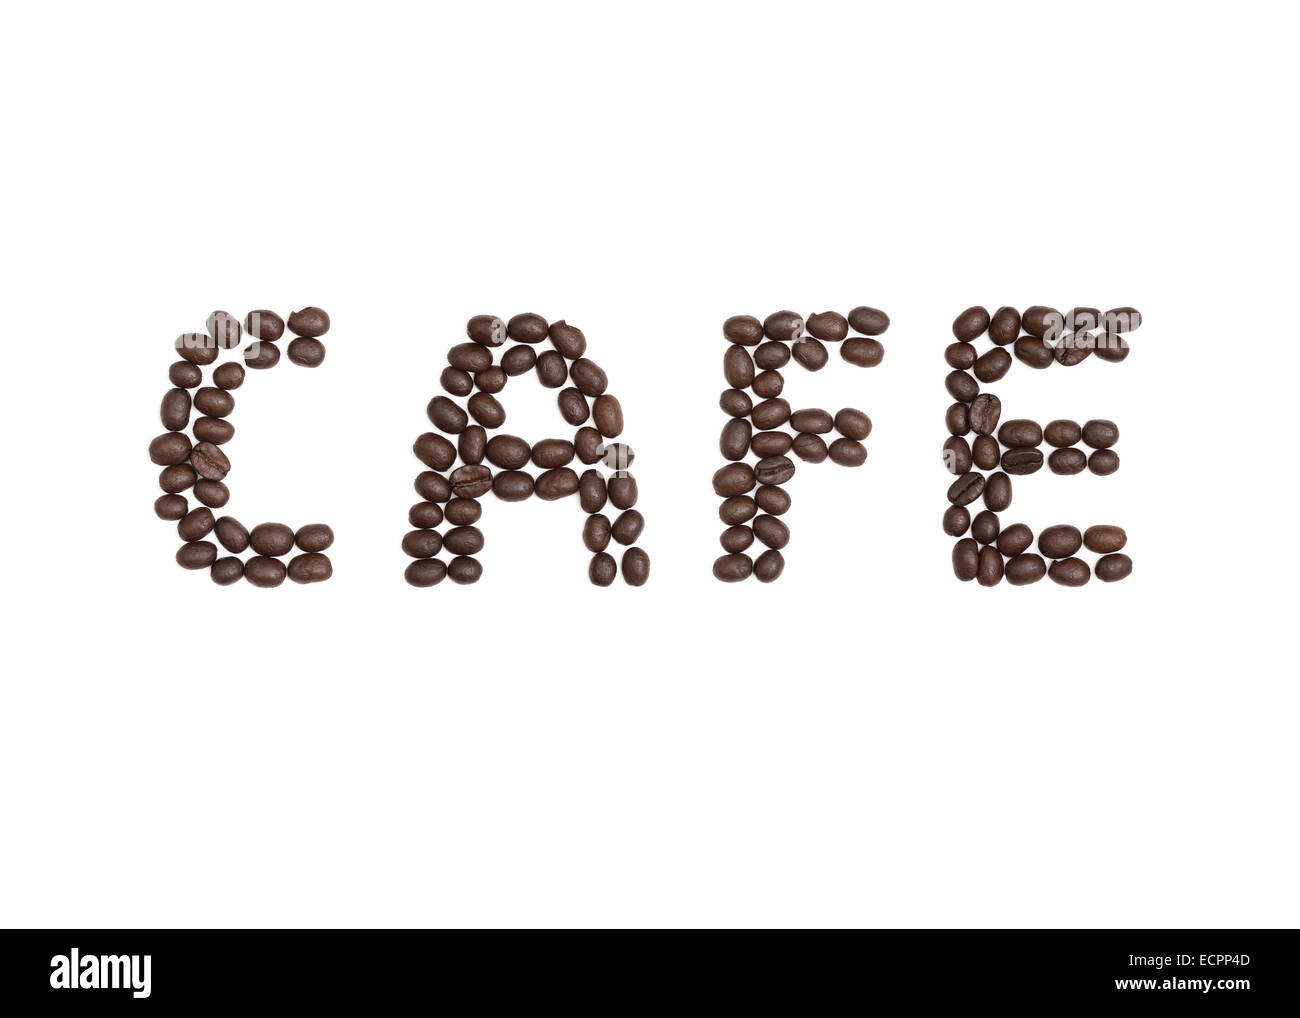 La parola 'Cafe' scritto con i chicchi di caffè Foto Stock